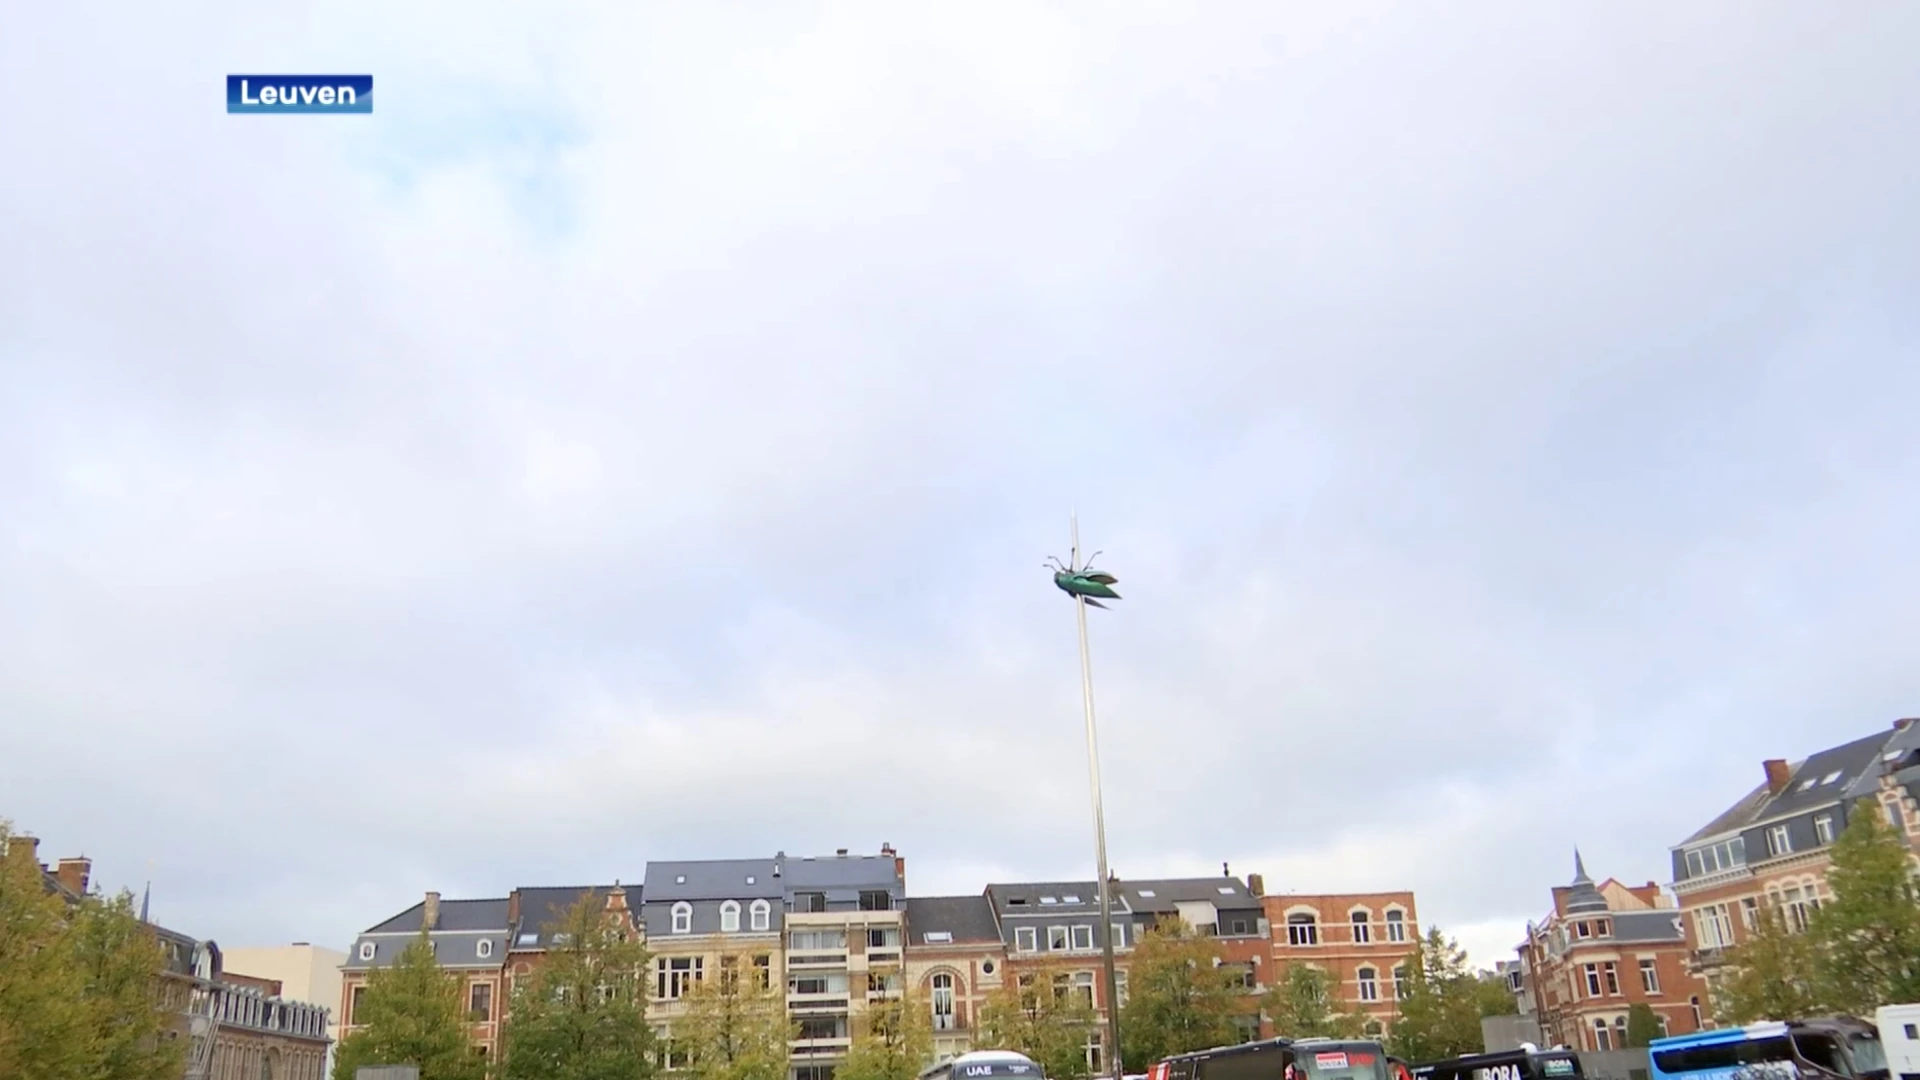 Stad Leuven roept publiek op om niet naar start Brabantse Pijl te komen